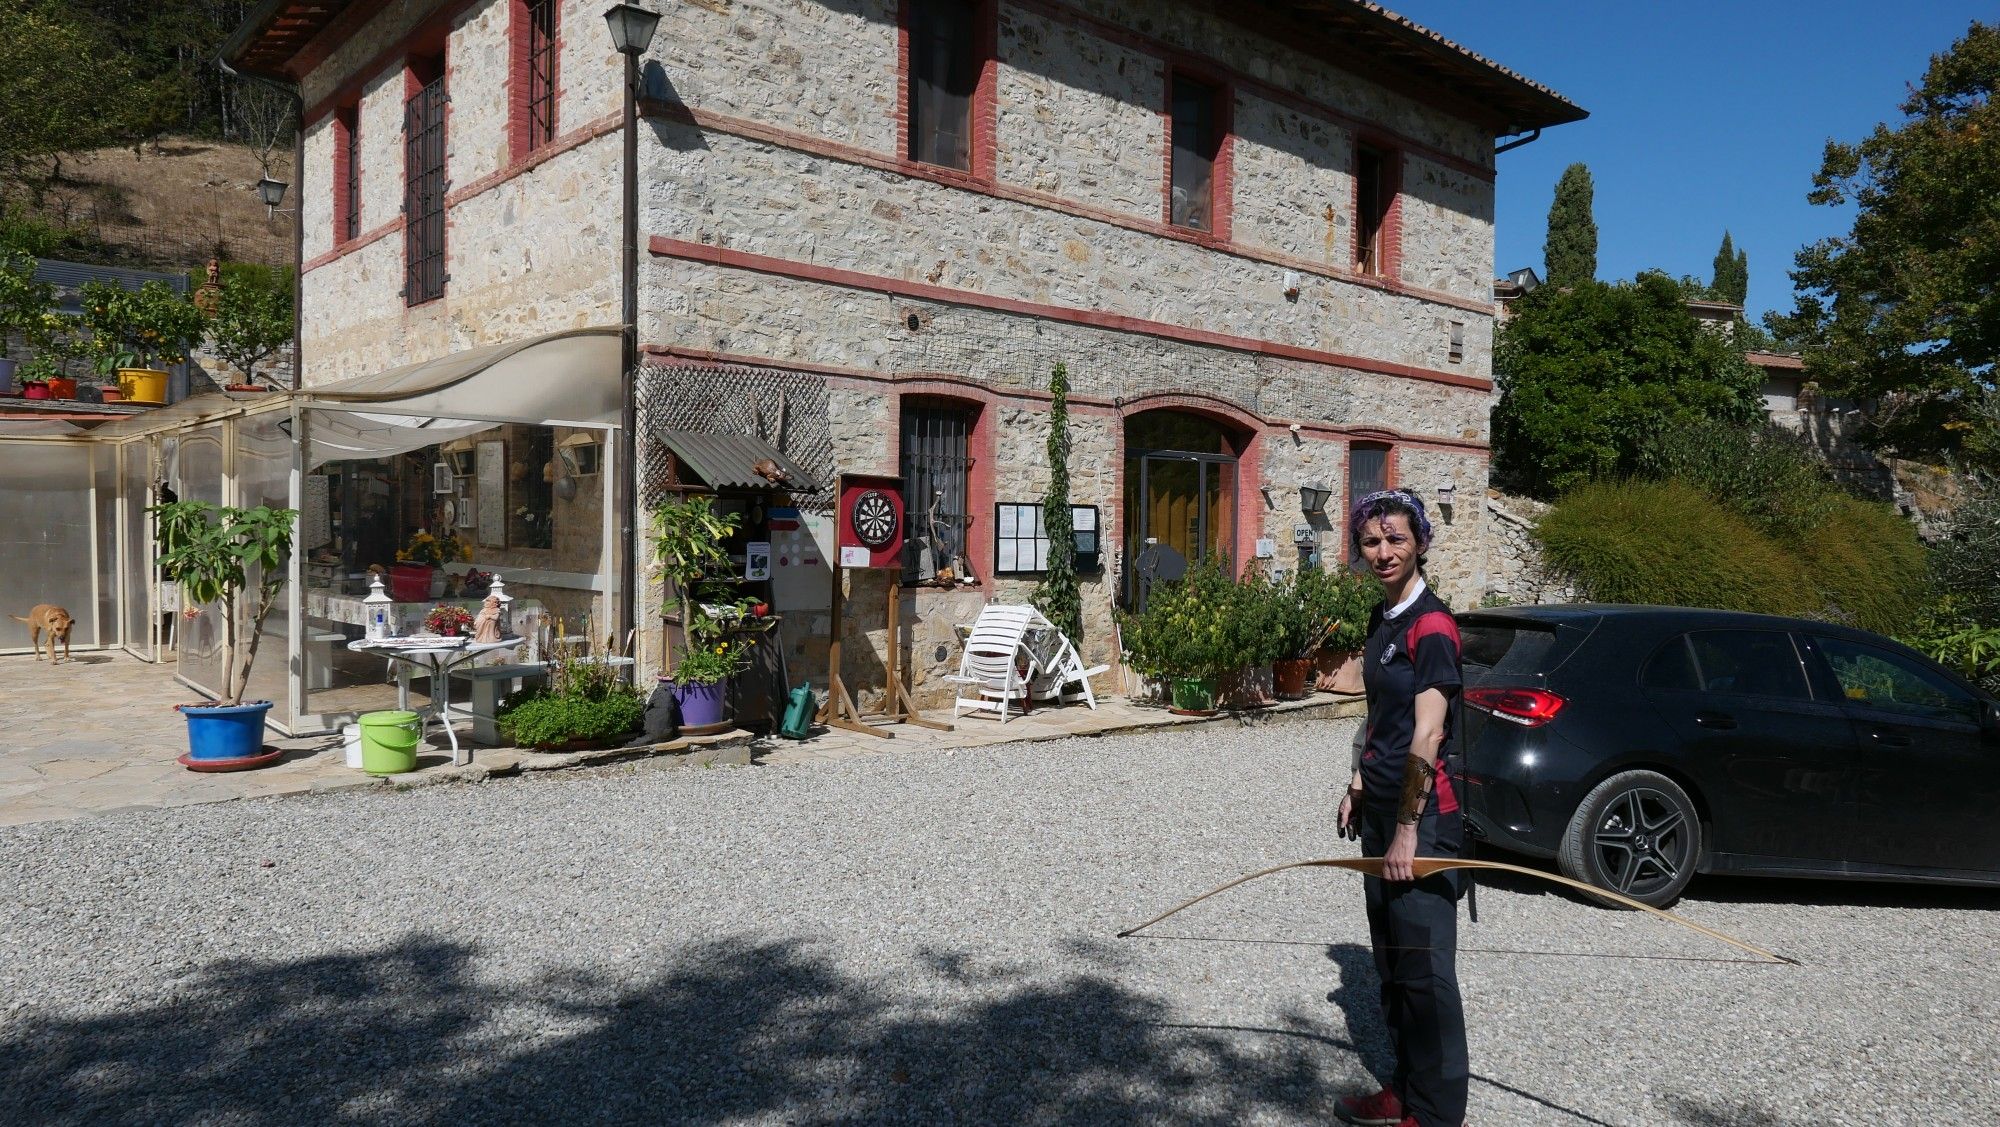 Poderi Val Verde, el resort arquero de la Toscana